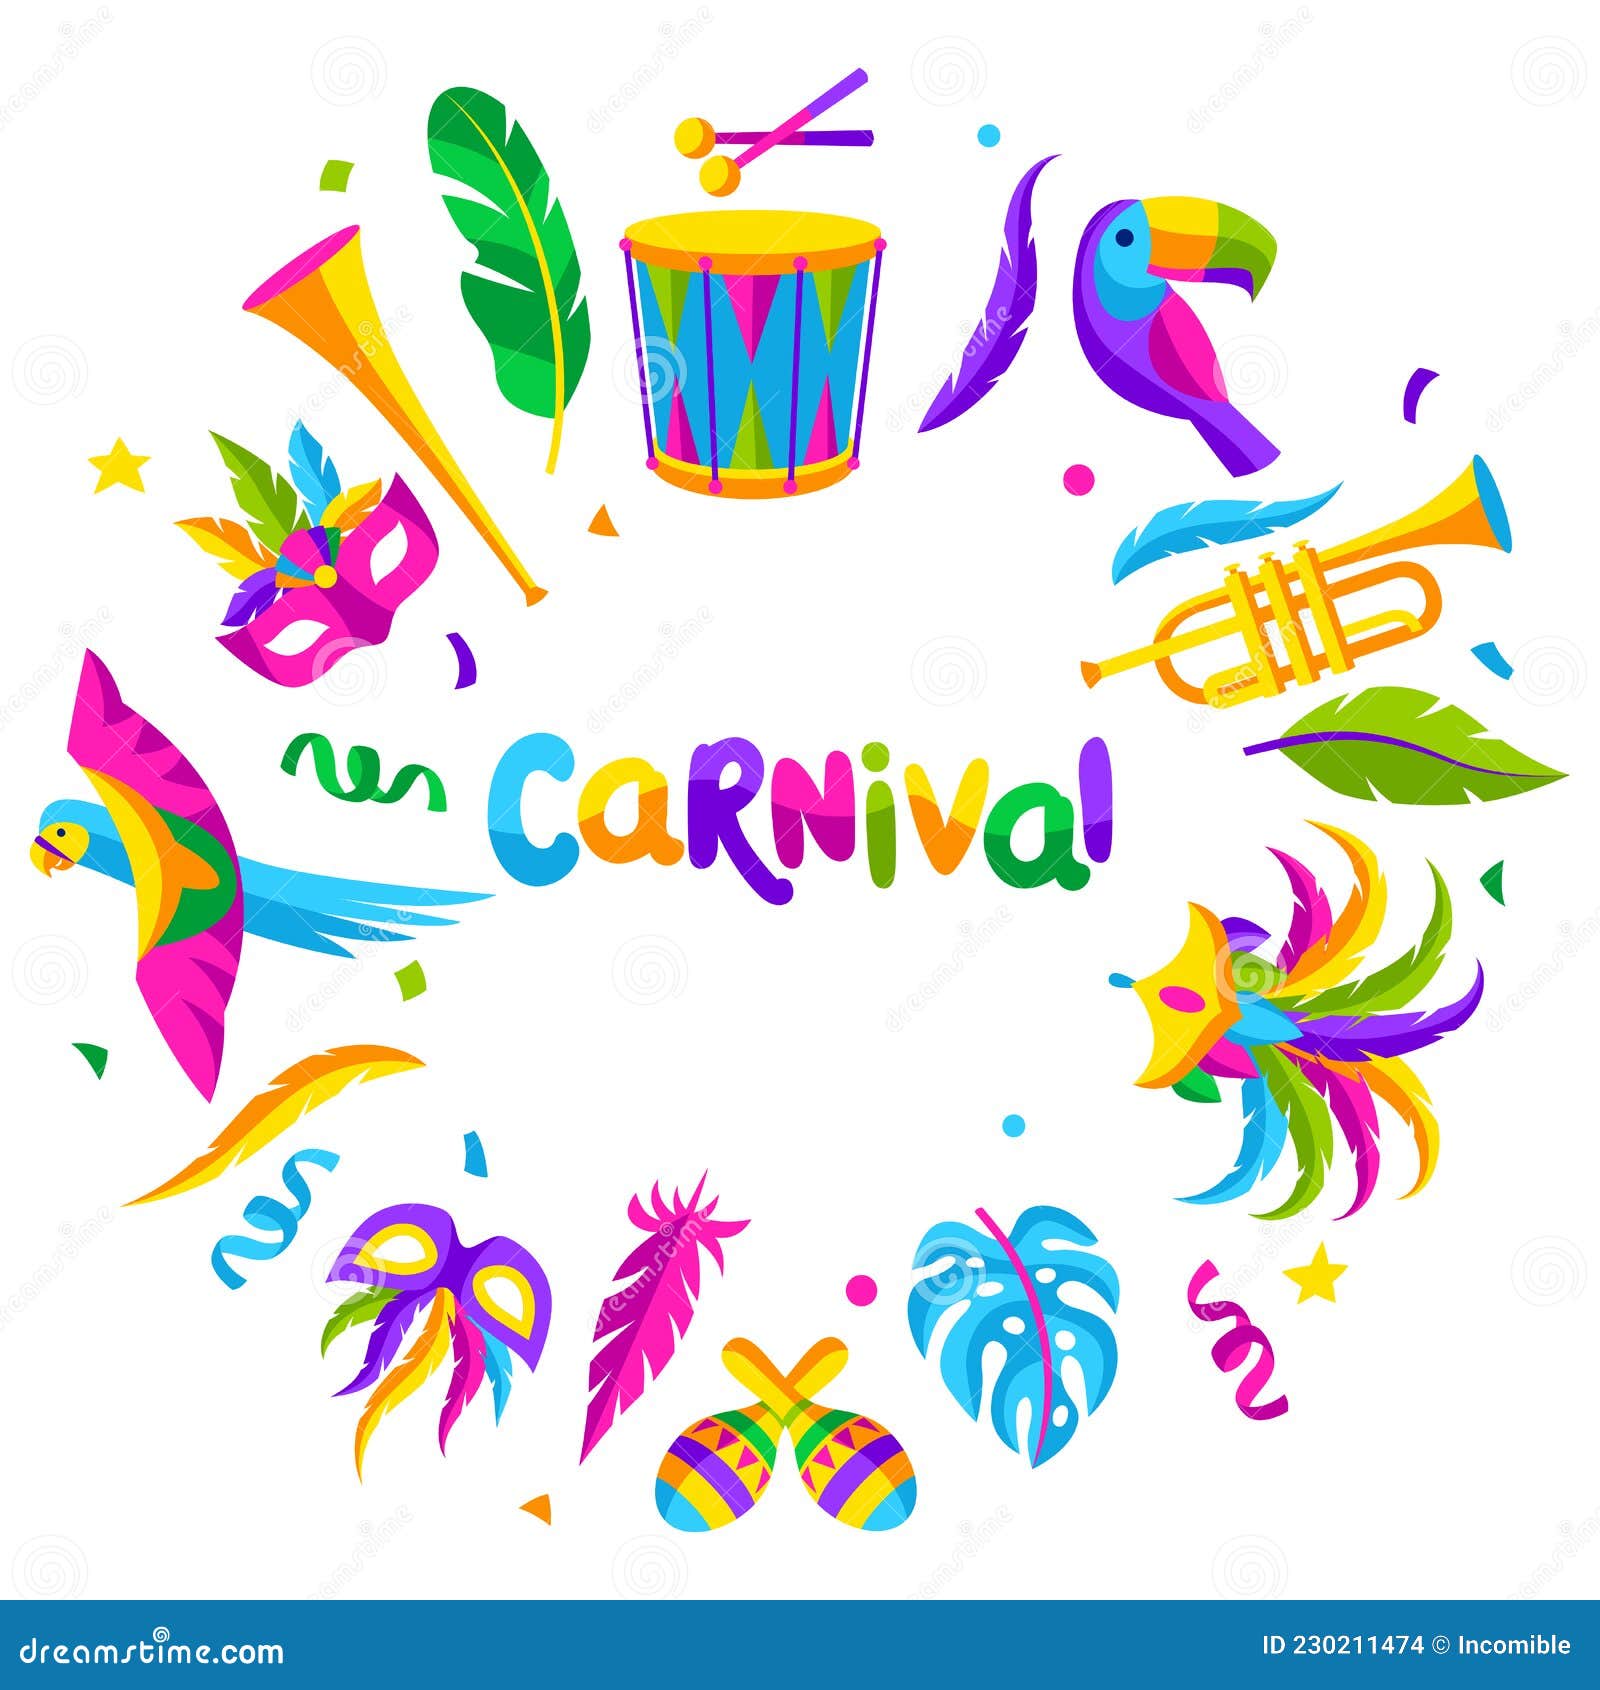 https://thumbs.dreamstime.com/z/fondo-de-la-fiesta-carnaval-con-iconos-celebraci%C3%B3n-objetos-y-decoraci%C3%B3n-ilustraci%C3%B3n-mardi-gras-para-vacaciones-tradicionales-230211474.jpg